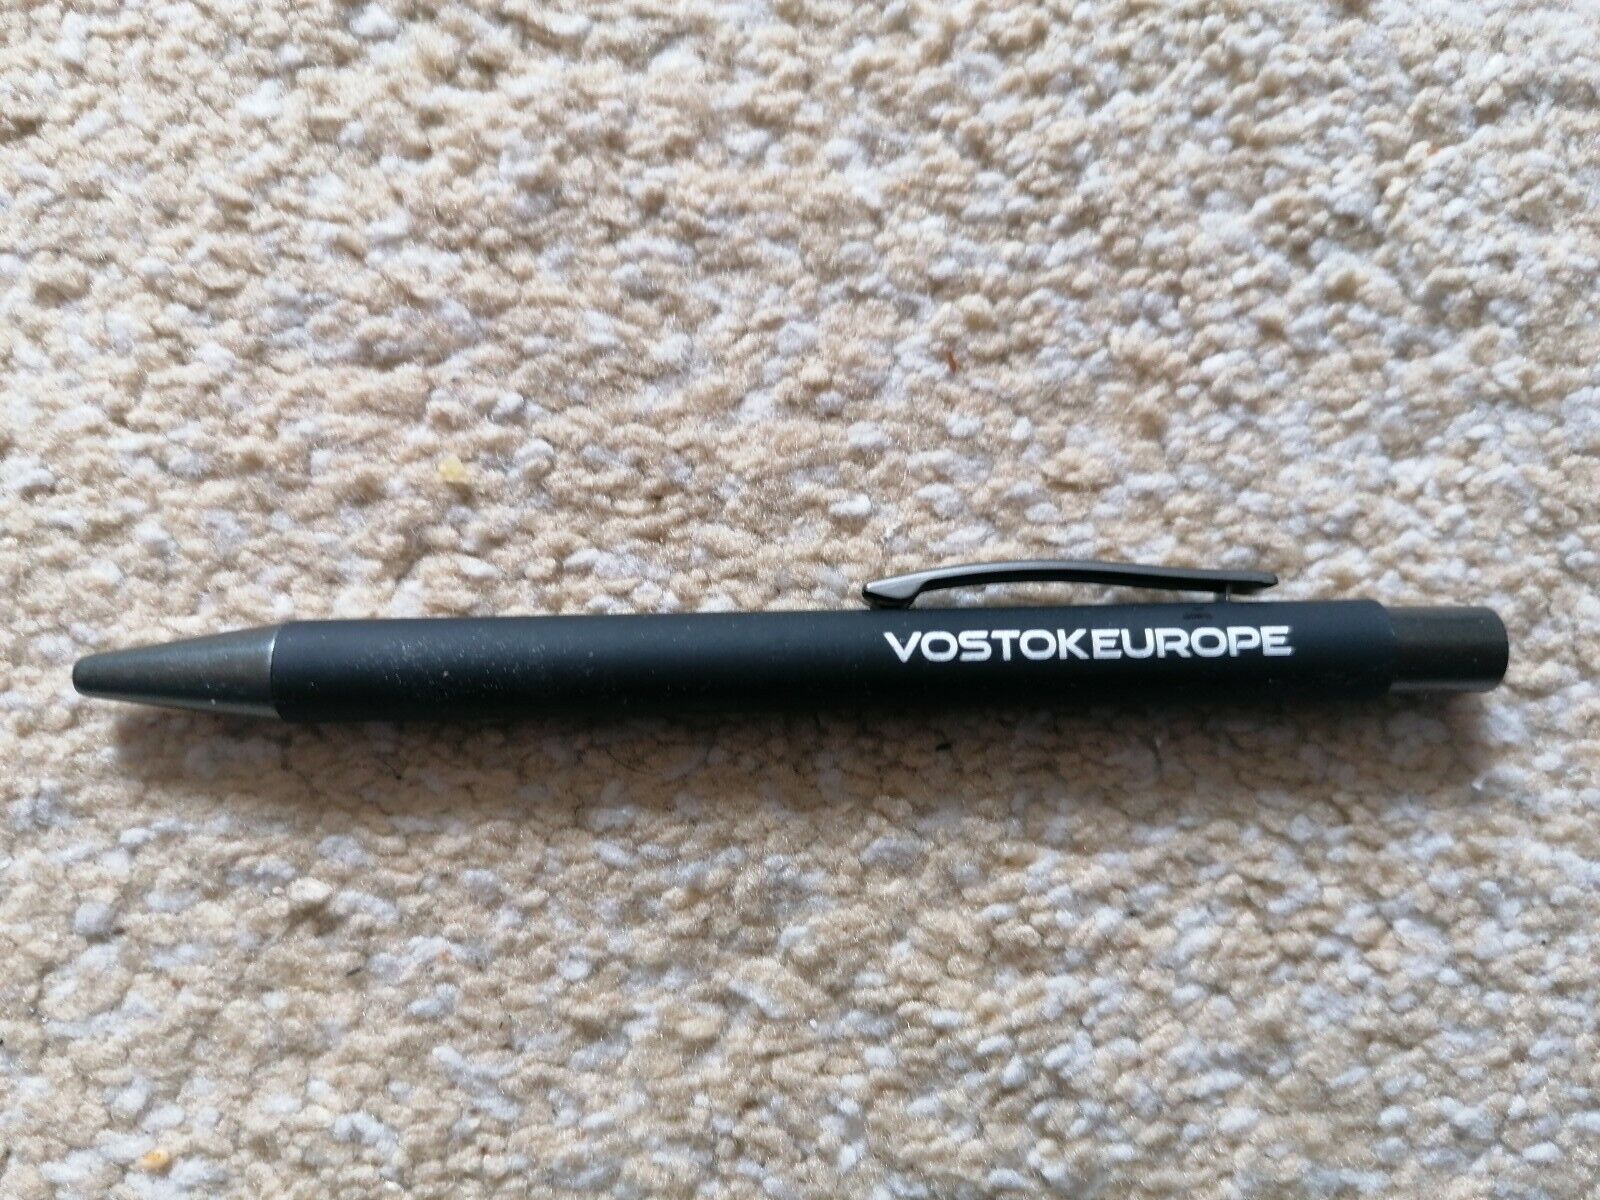 Vostok Europe Collectors Pen